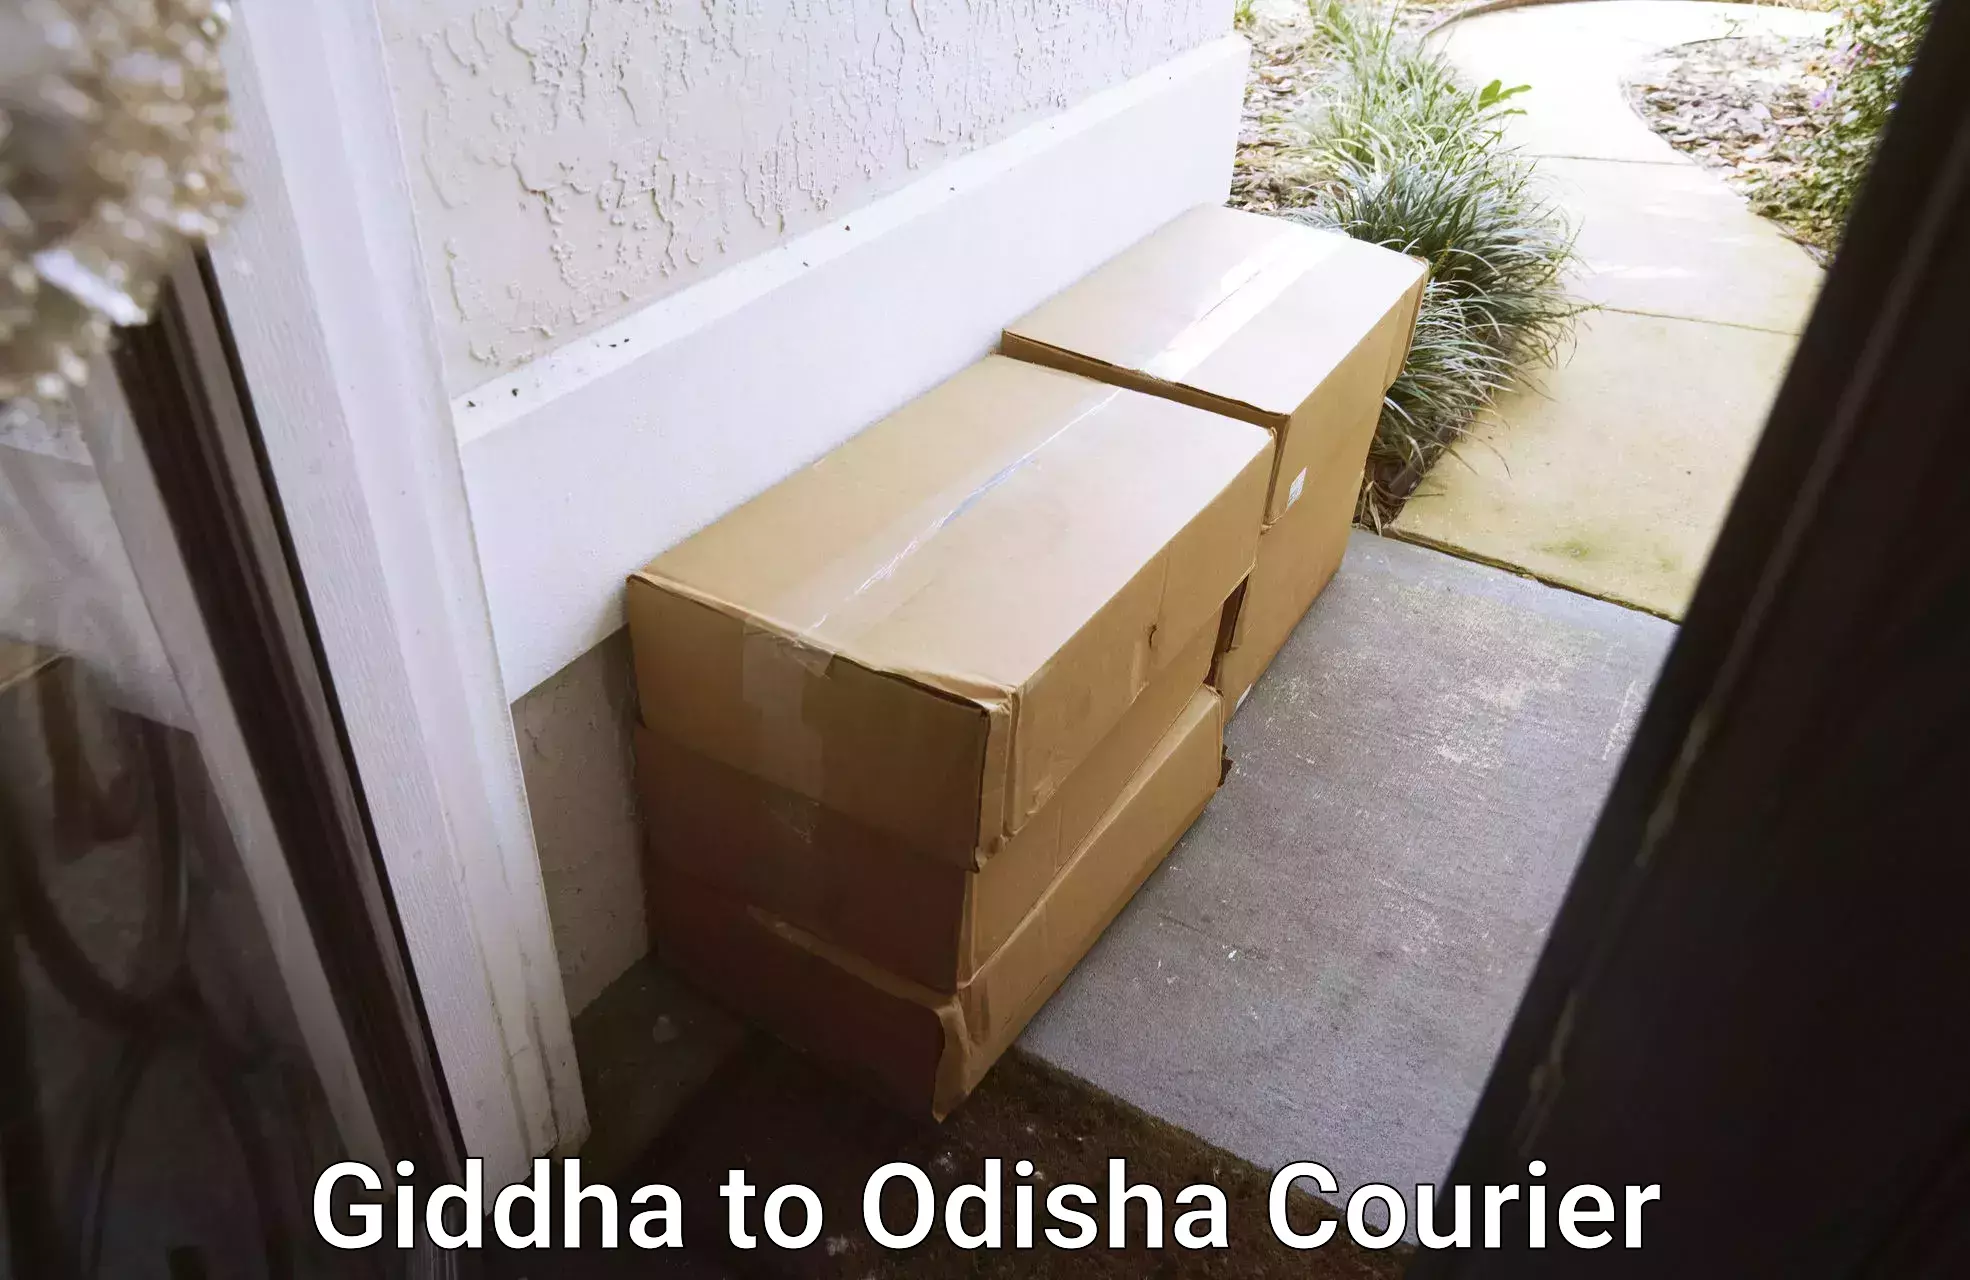 Comprehensive moving services Giddha to Raighar